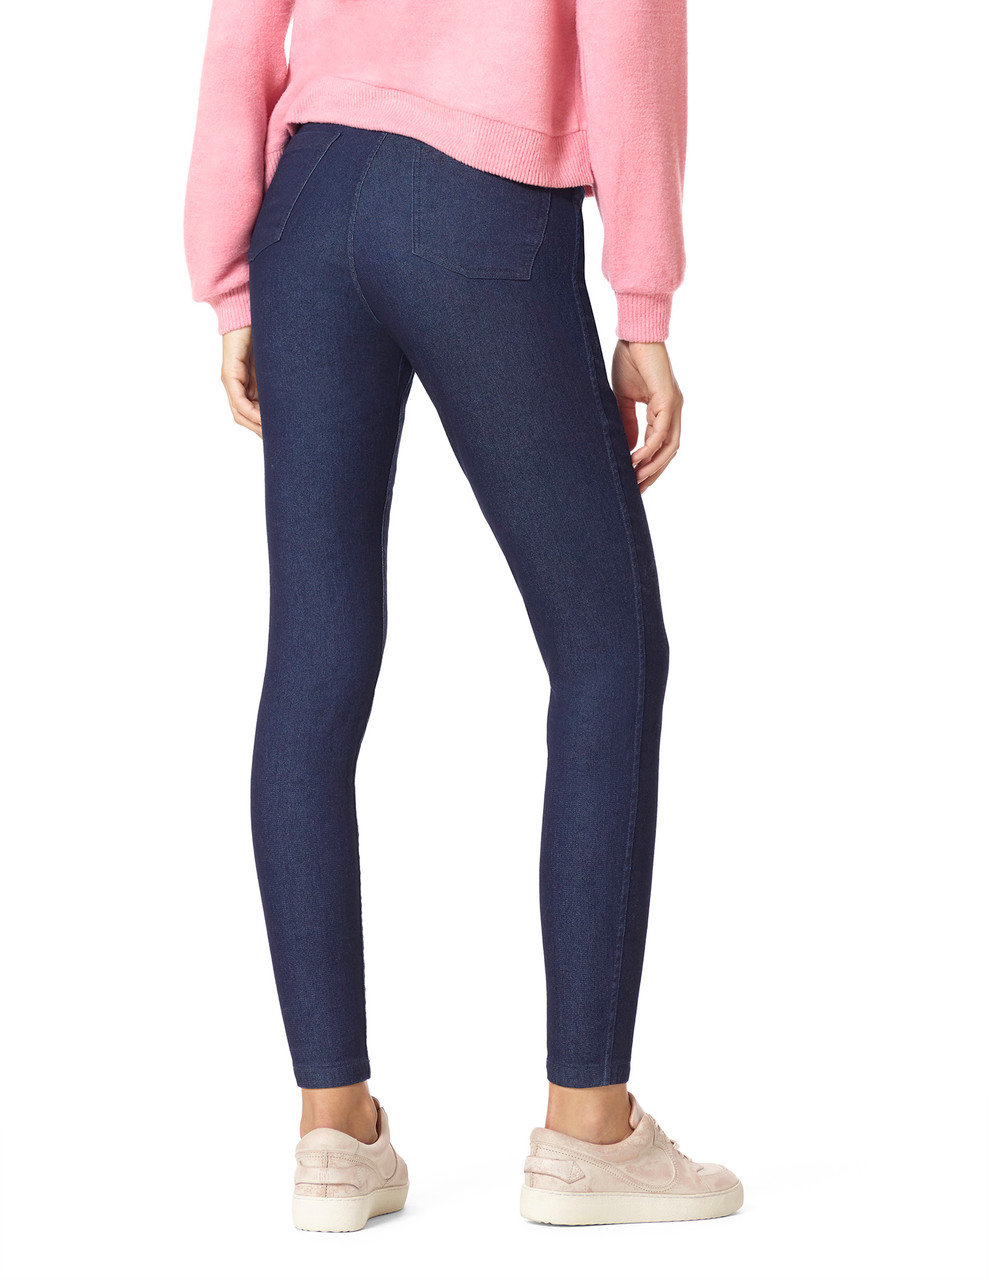 HUE, Jeans, Hue Watercolor Floral Capri Leggings Size Medium U4634 Pink  Green Yellow Orange